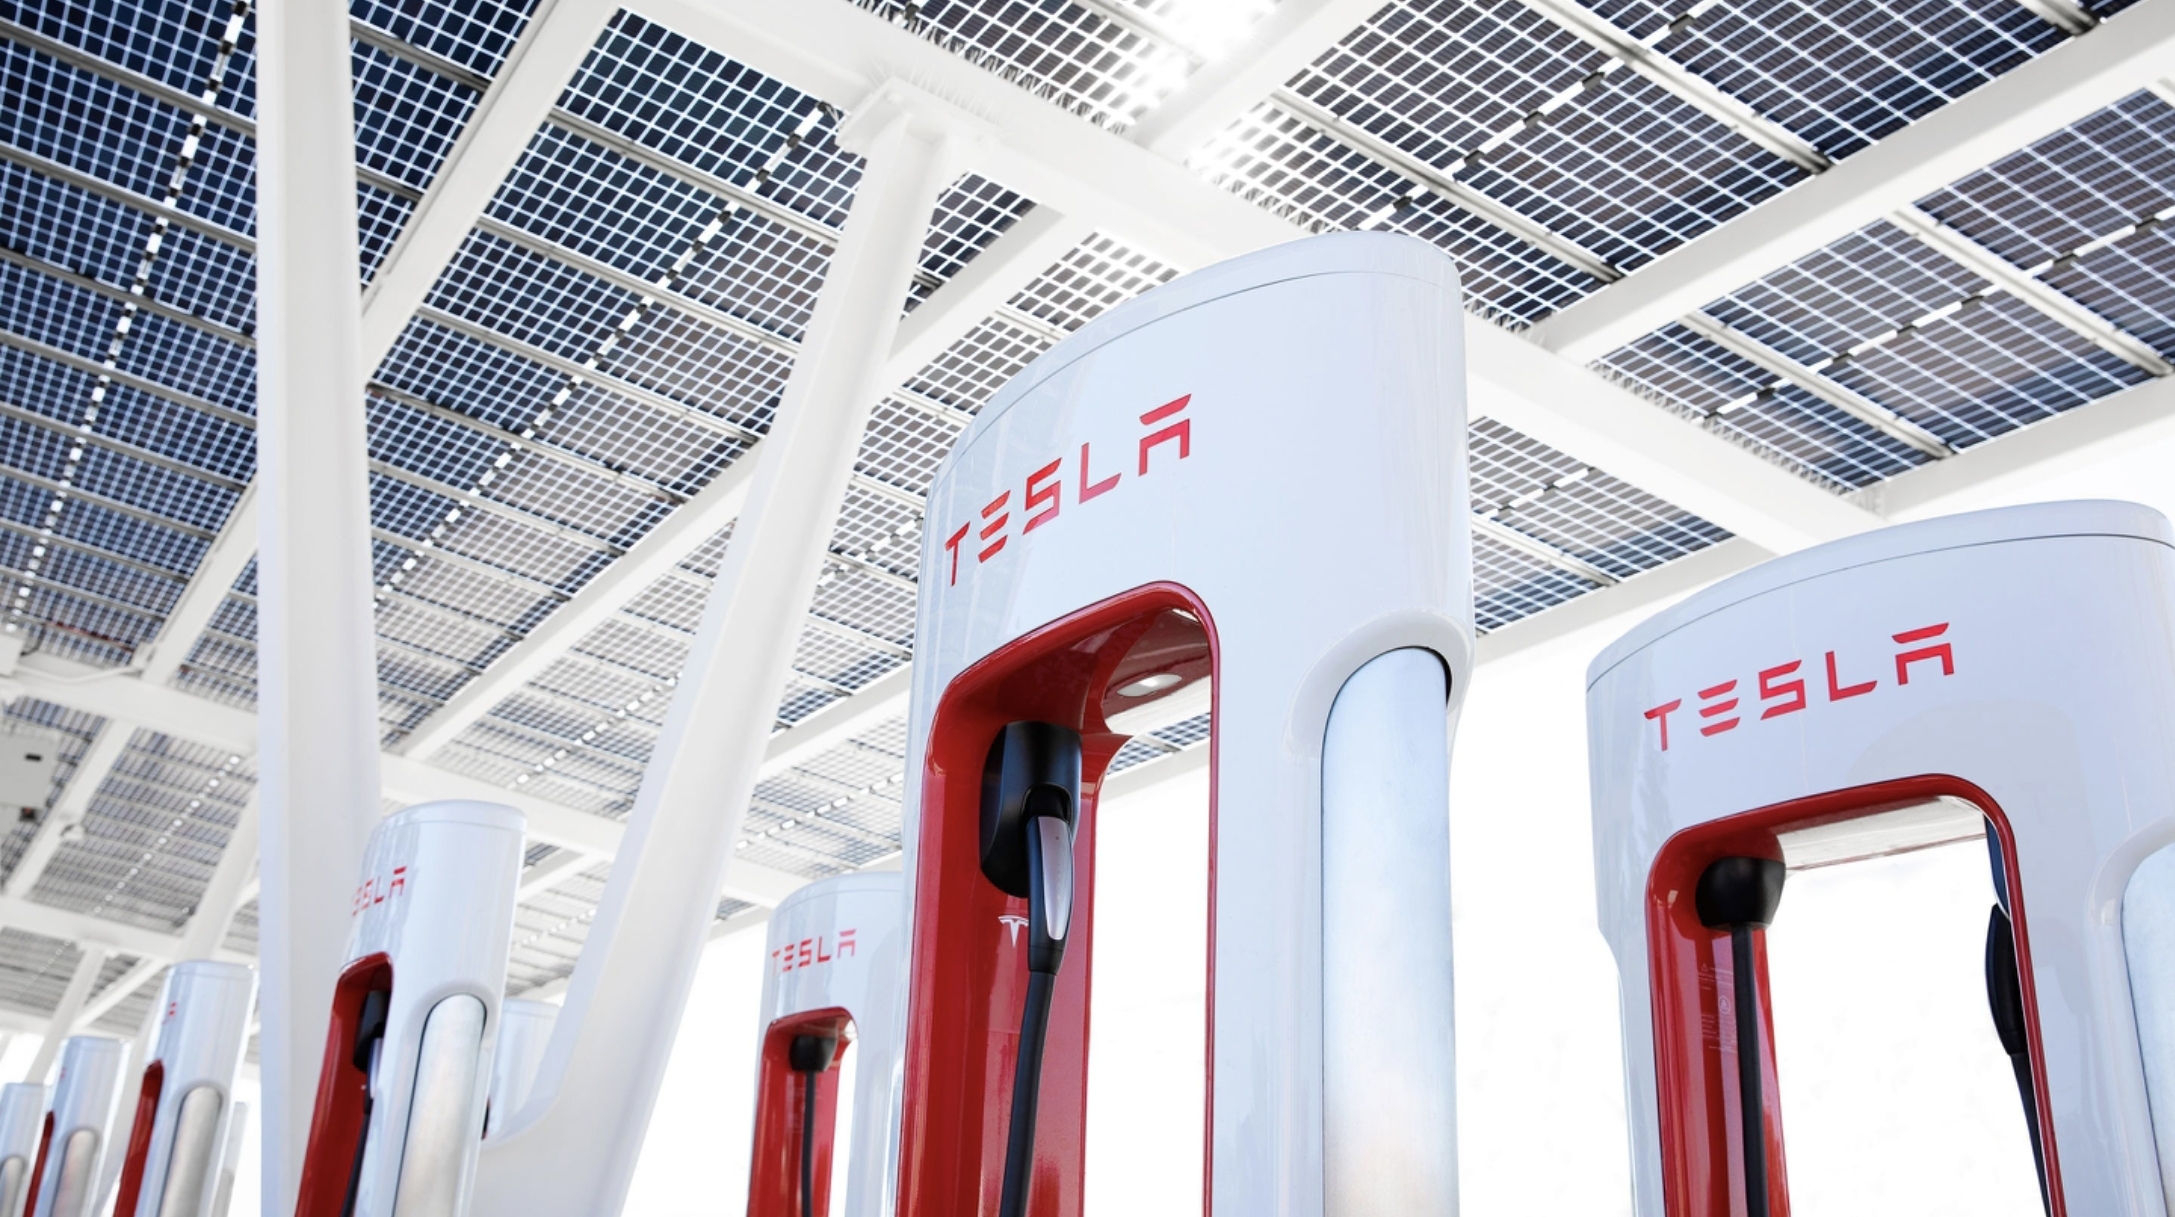 Команда Tesla Supercharger следующая получит топор